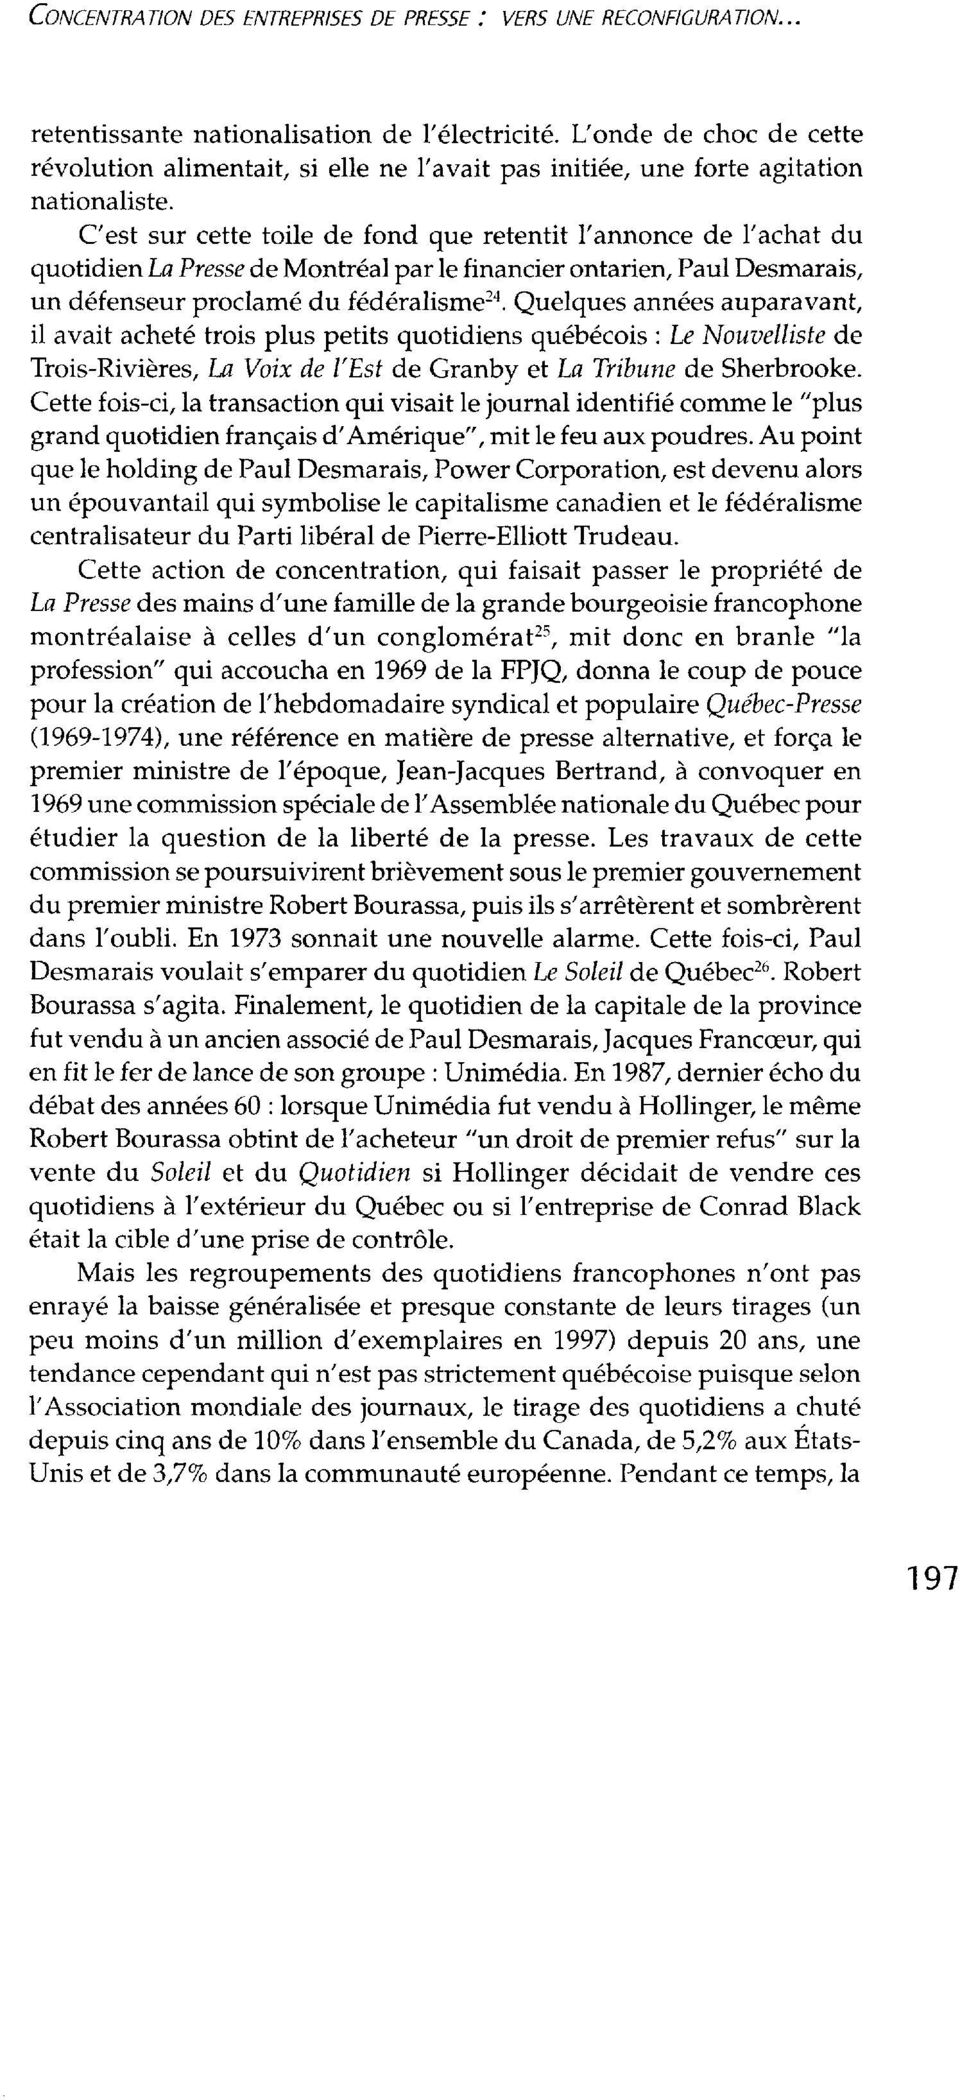 C'est sur cette toile de fond que retentit l'annonce de l'achat du quotidien La Presse de Montréal par le financier ontarien, Paul Desmarais, un défenseur proclamé du fédéralisme2a.